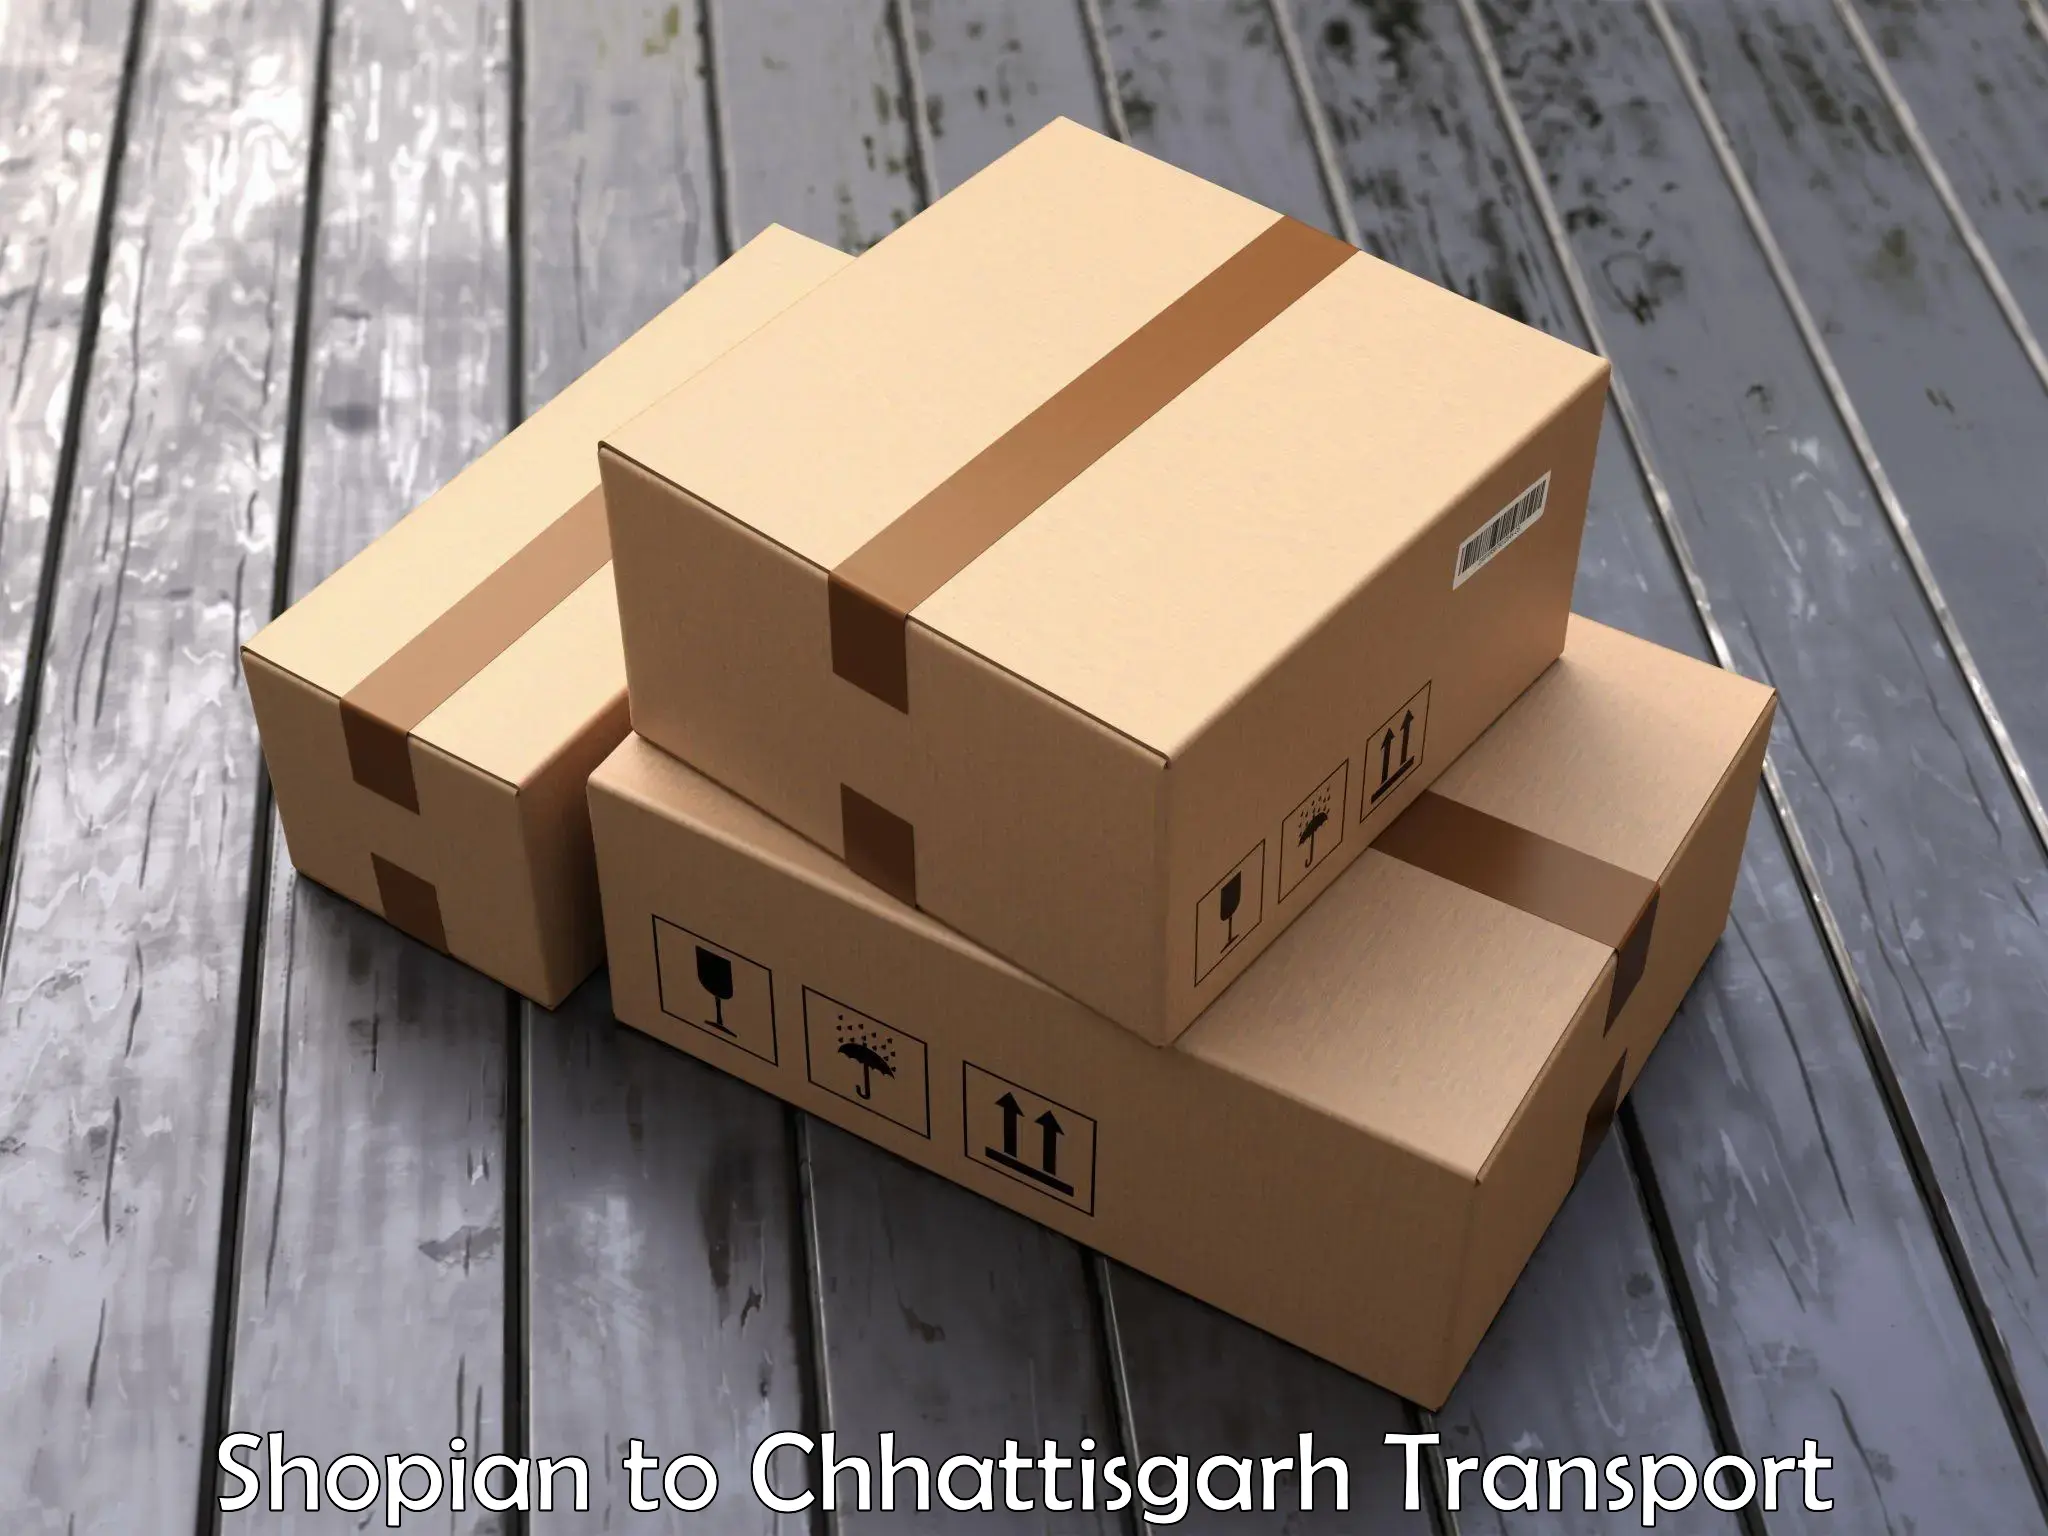 Cargo train transport services Shopian to Chhattisgarh